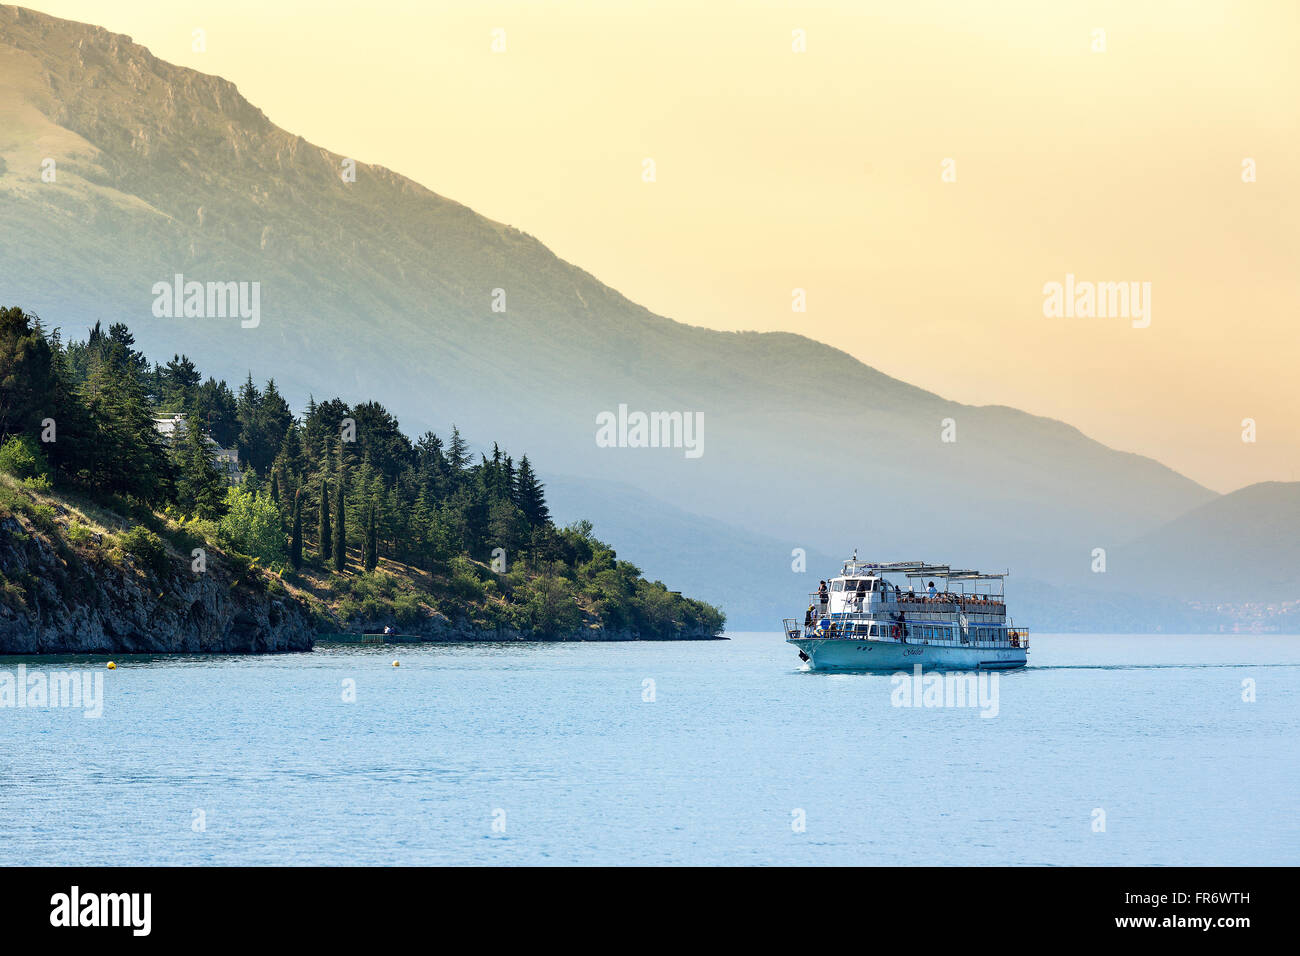 République de Macédoine, Ohrid, inscrite au Patrimoine Mondial de l'UNESCO centre-ville au bord du lac Banque D'Images